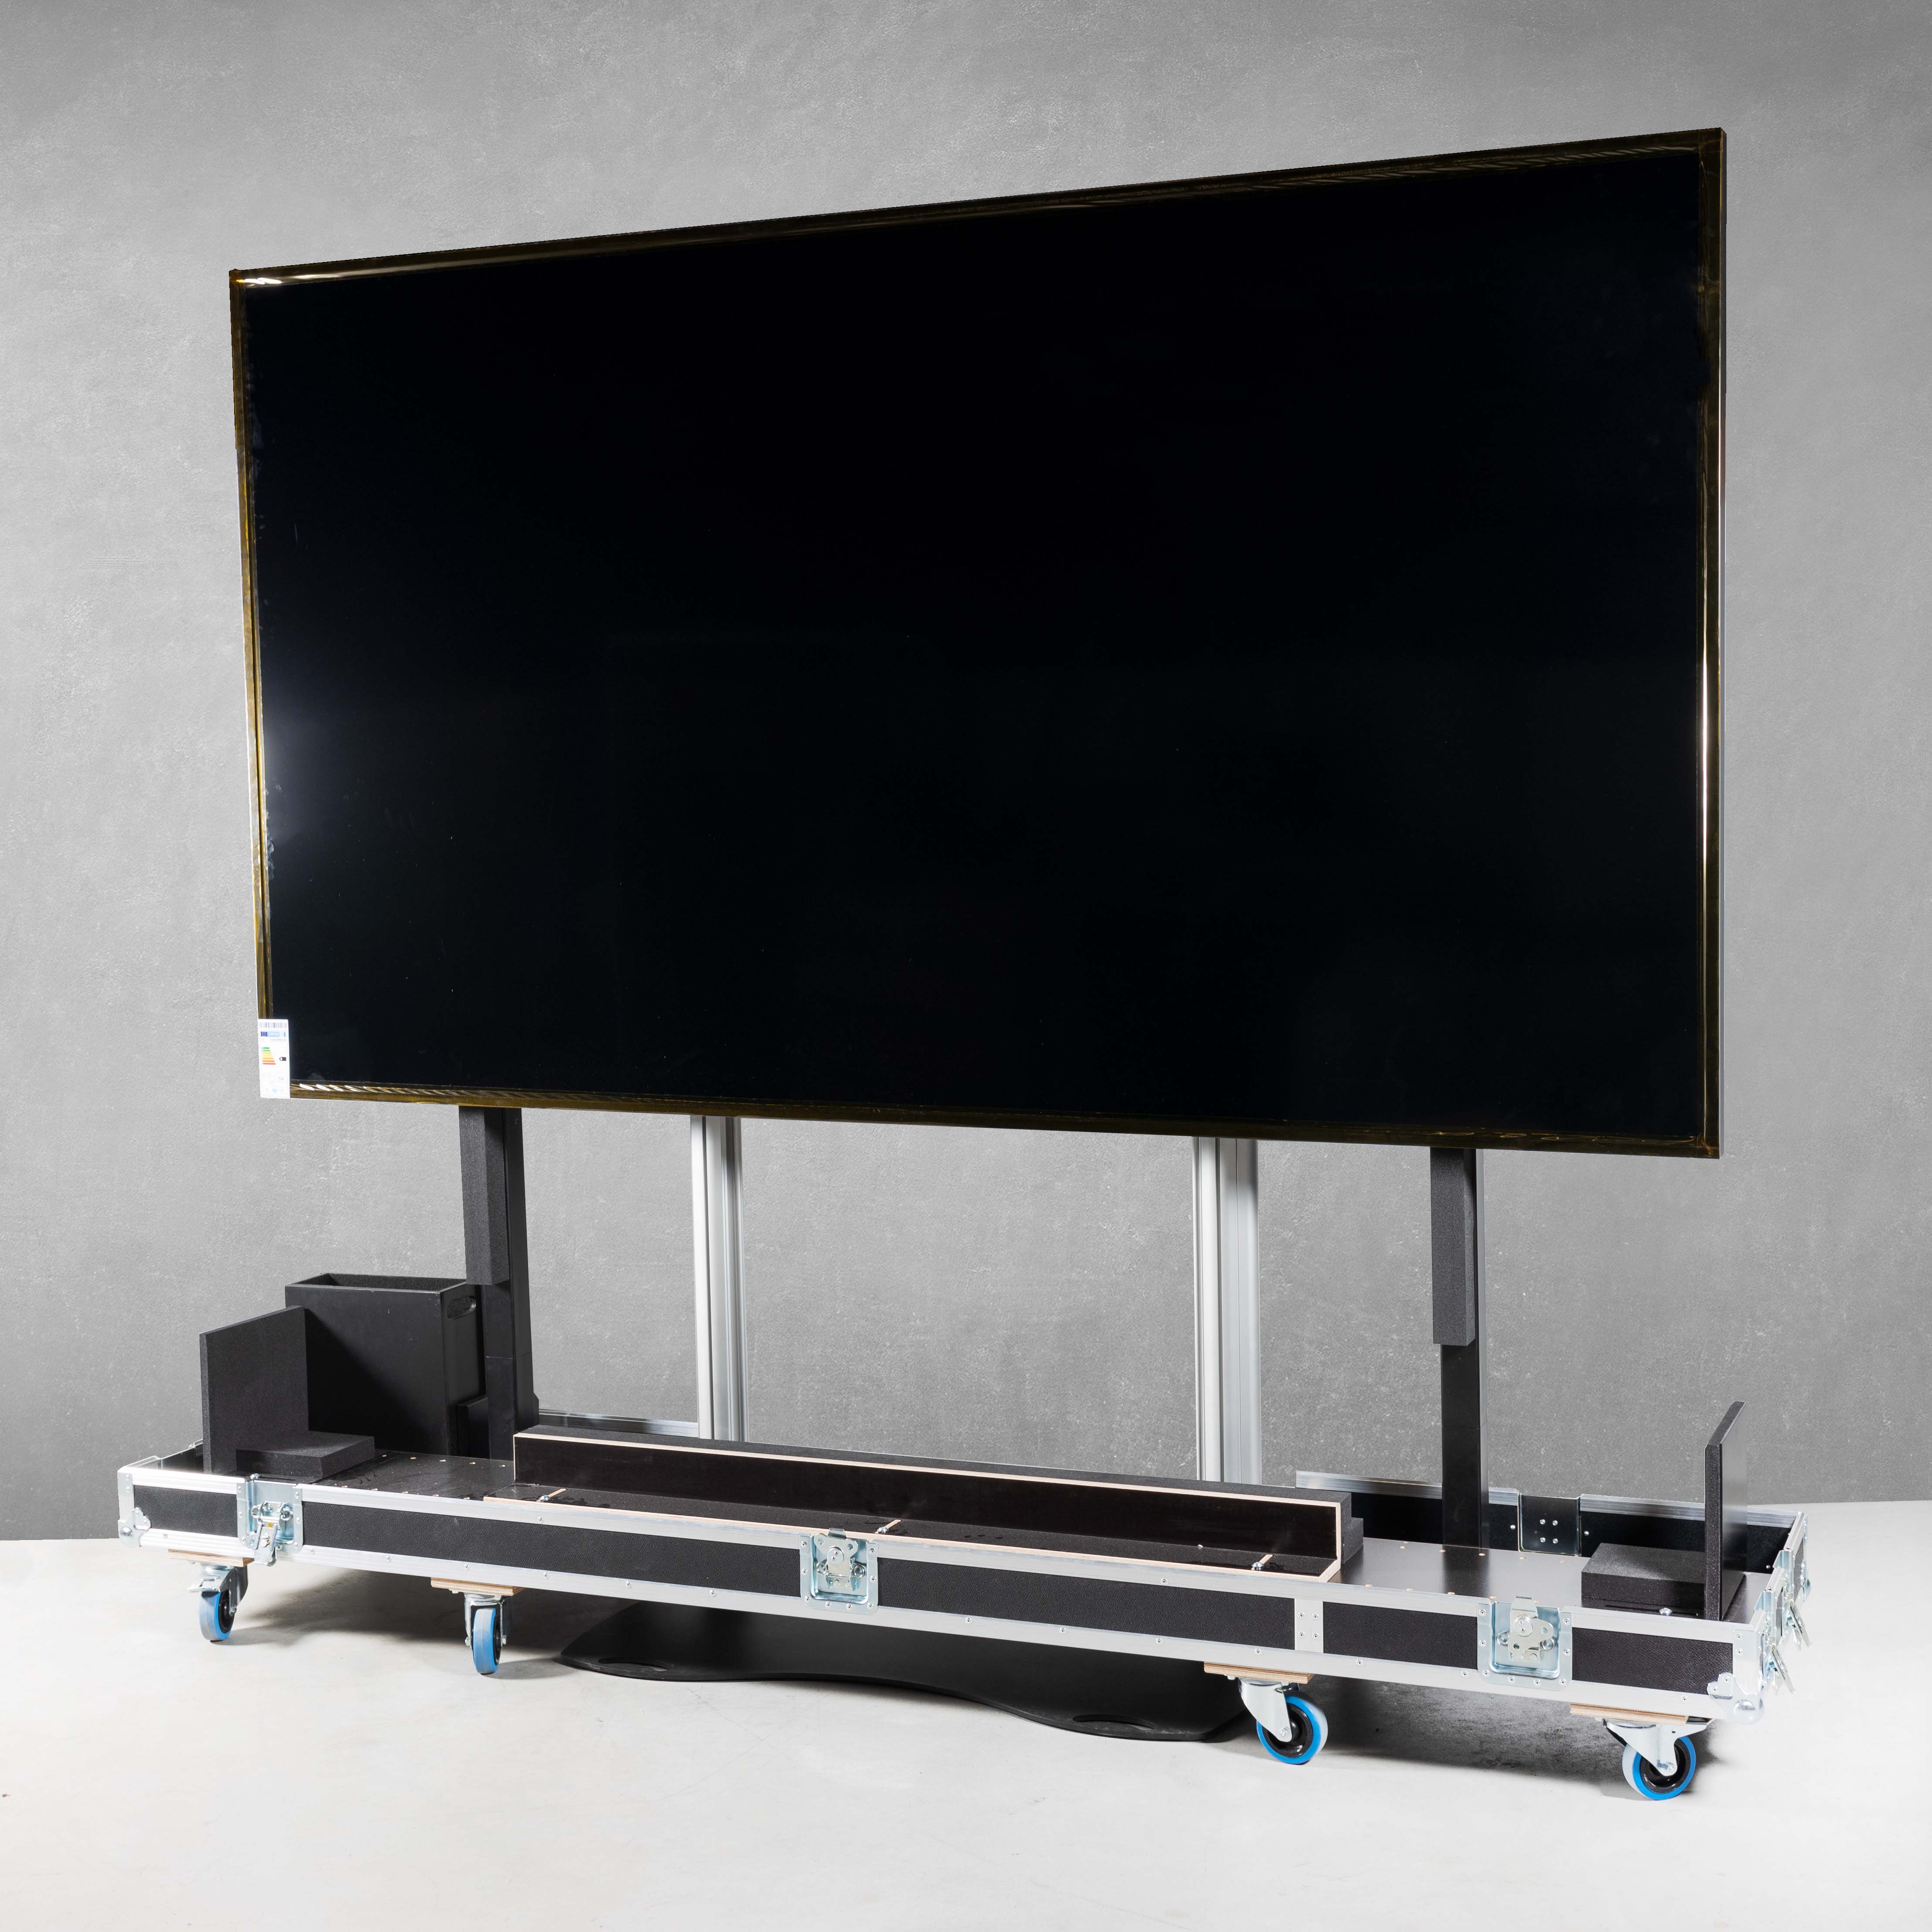 Universal-Flightcase für einen Flachbildschirm bis 110" LG 110UM5J-B